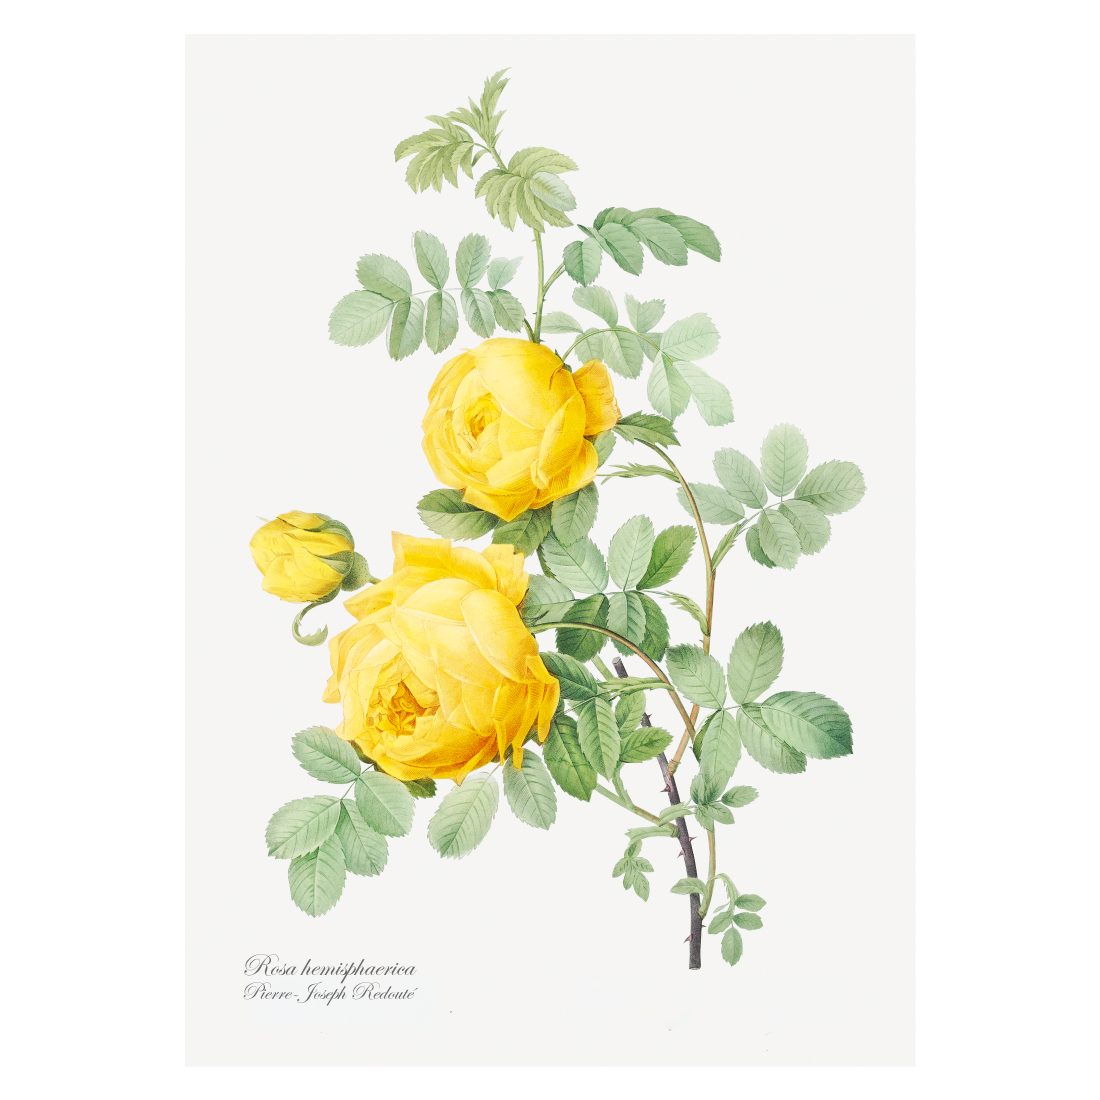 Grafisk blomsterplakat med gul hemisphaerica  rose